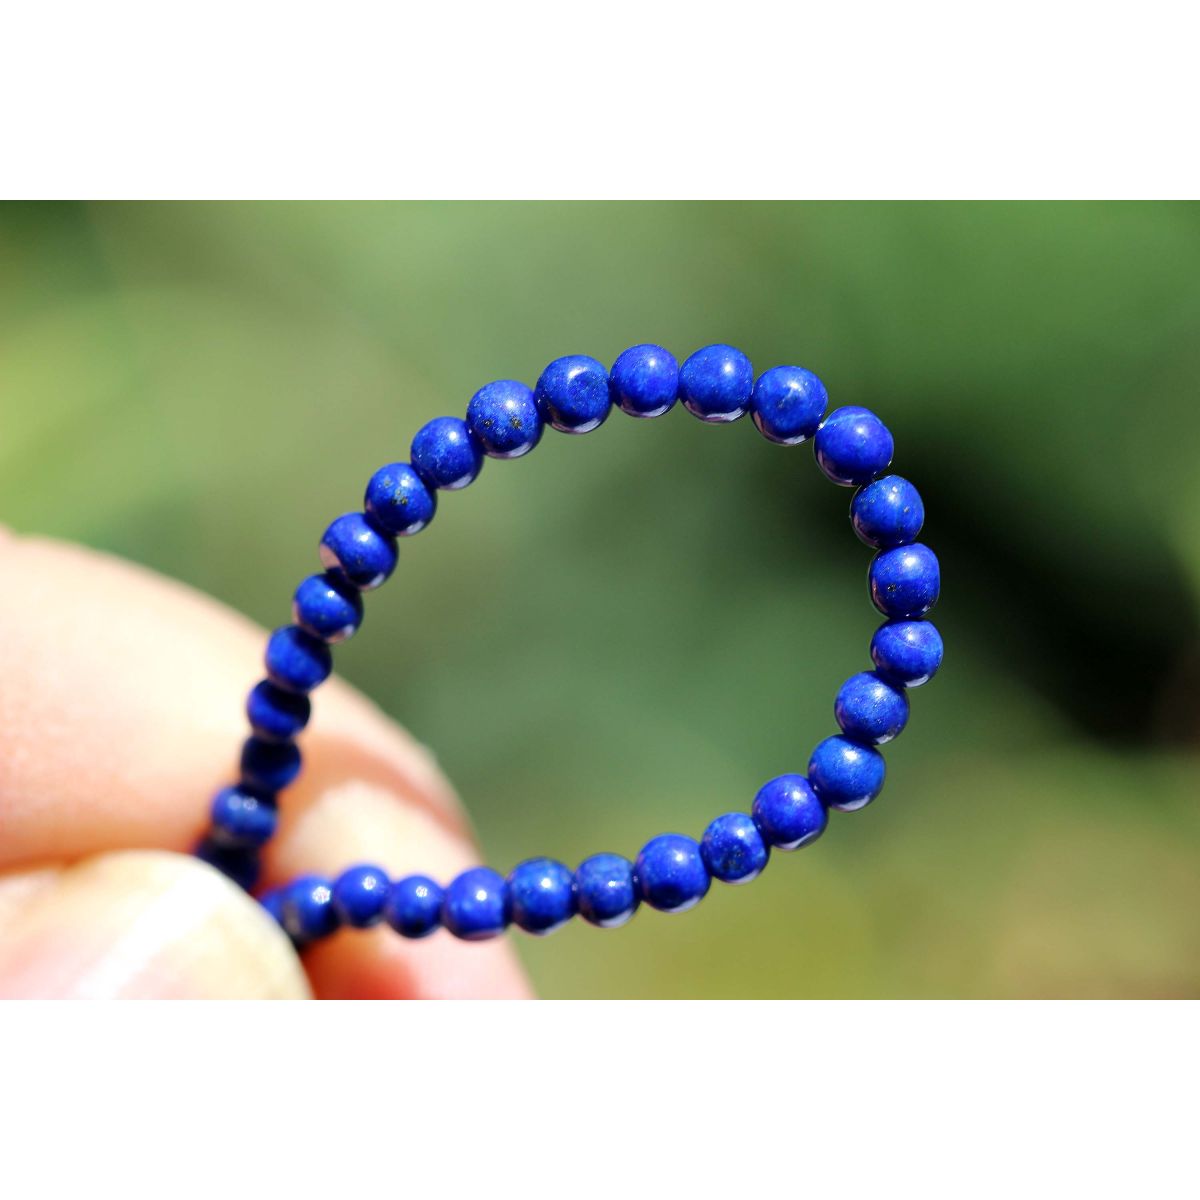 Lapis Lazuli-Mini Kugeln glänzend-Energie-Armband (Kraft und Einsicht)